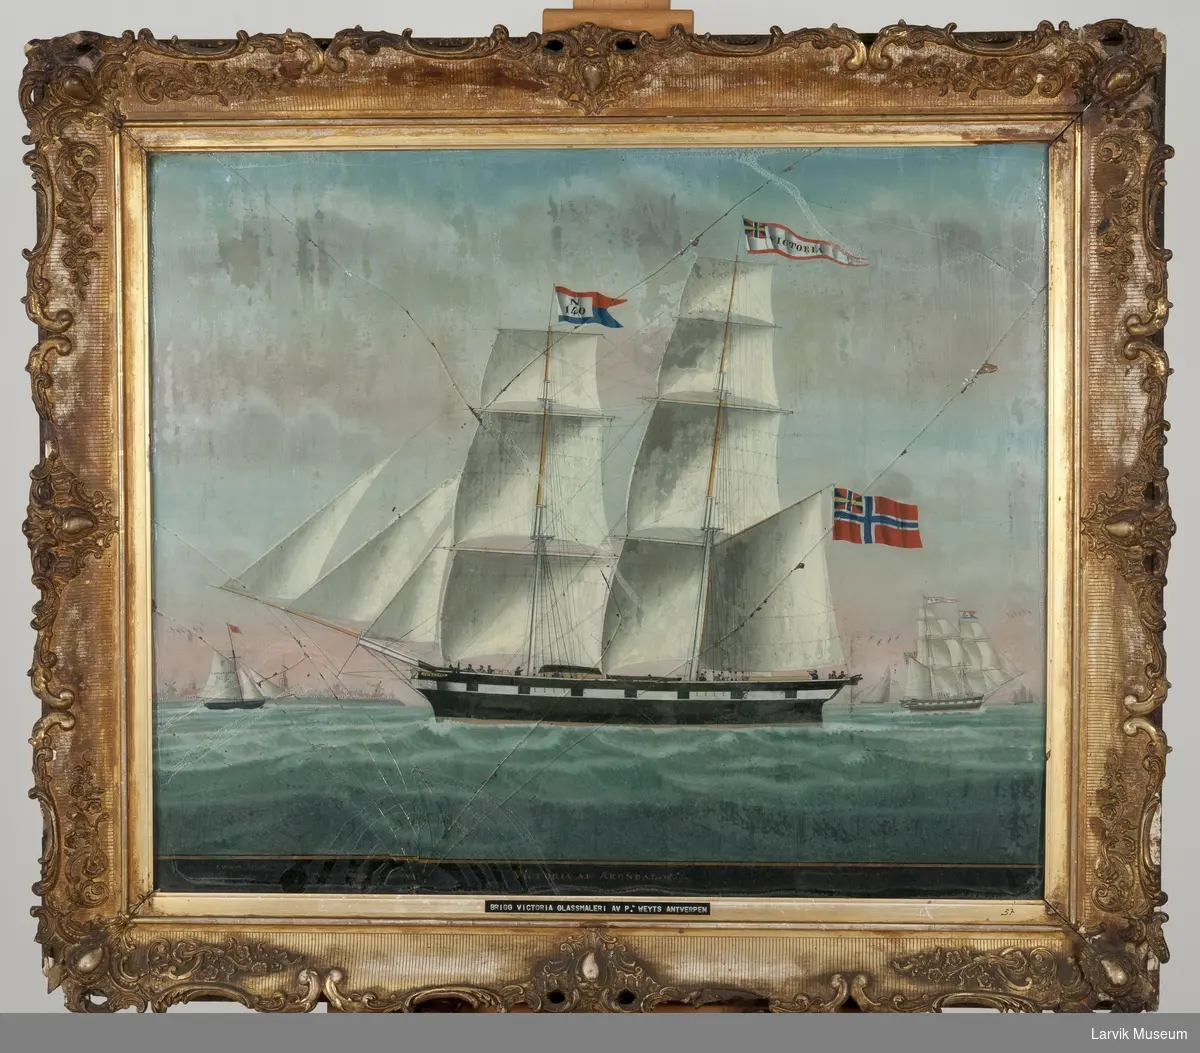 VICTORIA
Nasjon: Norsk
Type: Brigg
Byggeår: 1847
Byggested: Arendal, Norge
Ombygging: Fortømret 1861
Endelig skjebne: Forlist 1881